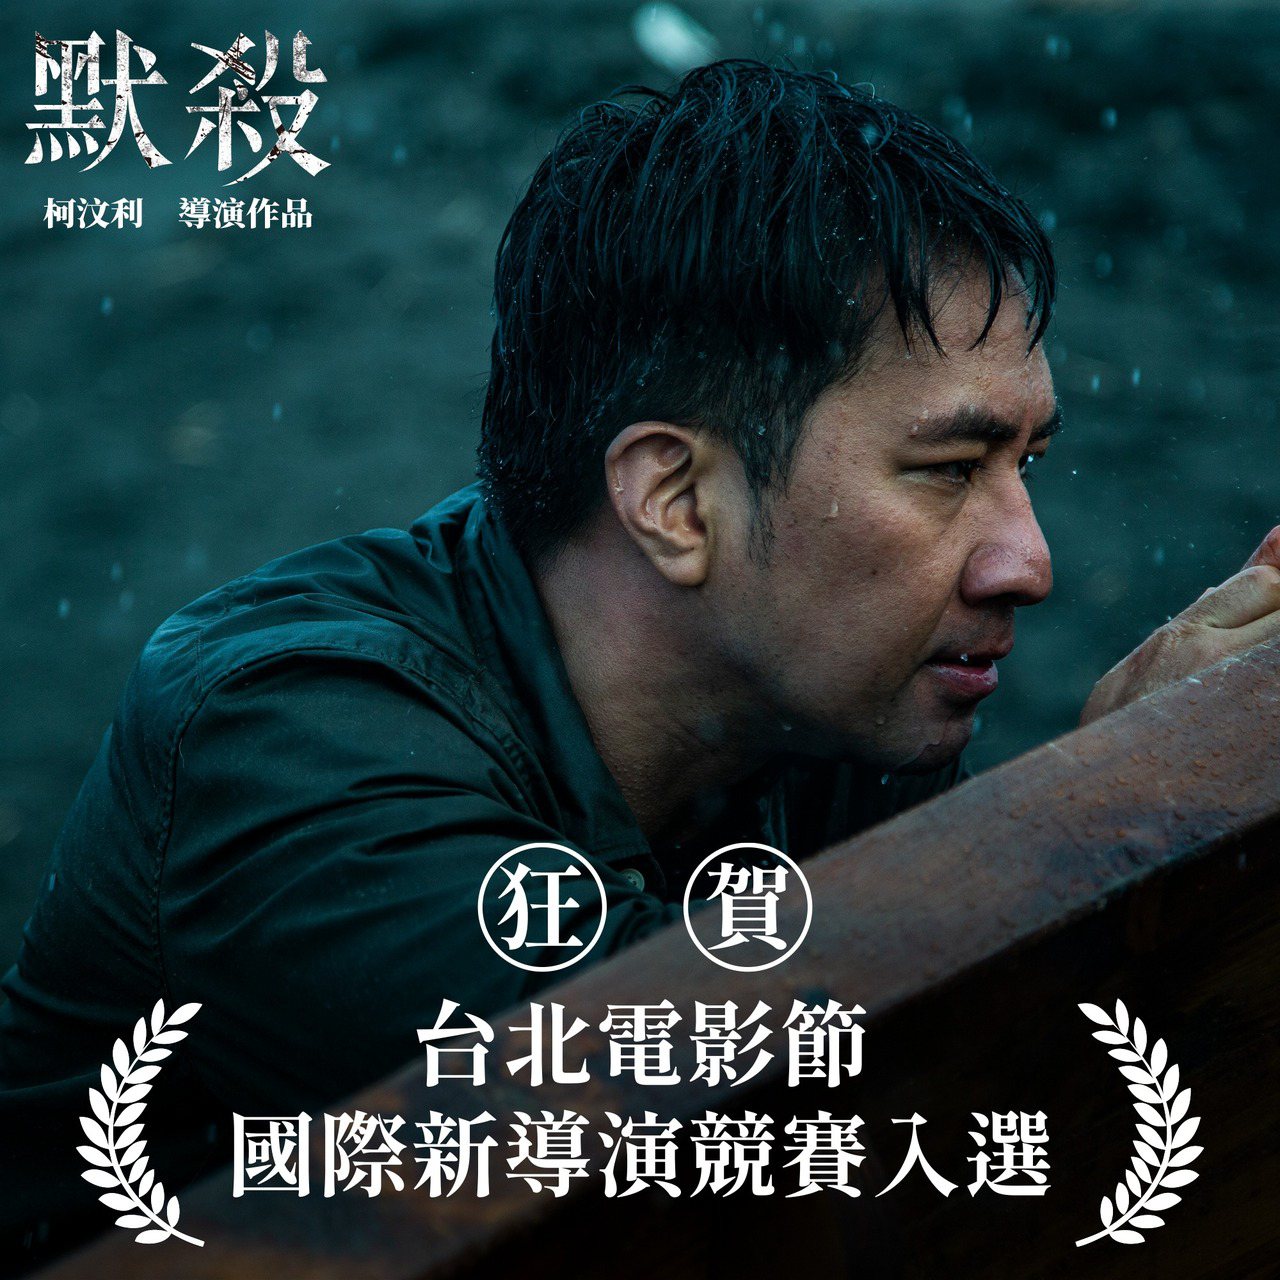 柯汶利執導的劇情長片《默殺》入選今年北影25國際新導演競賽。圖/默殺臉書粉專